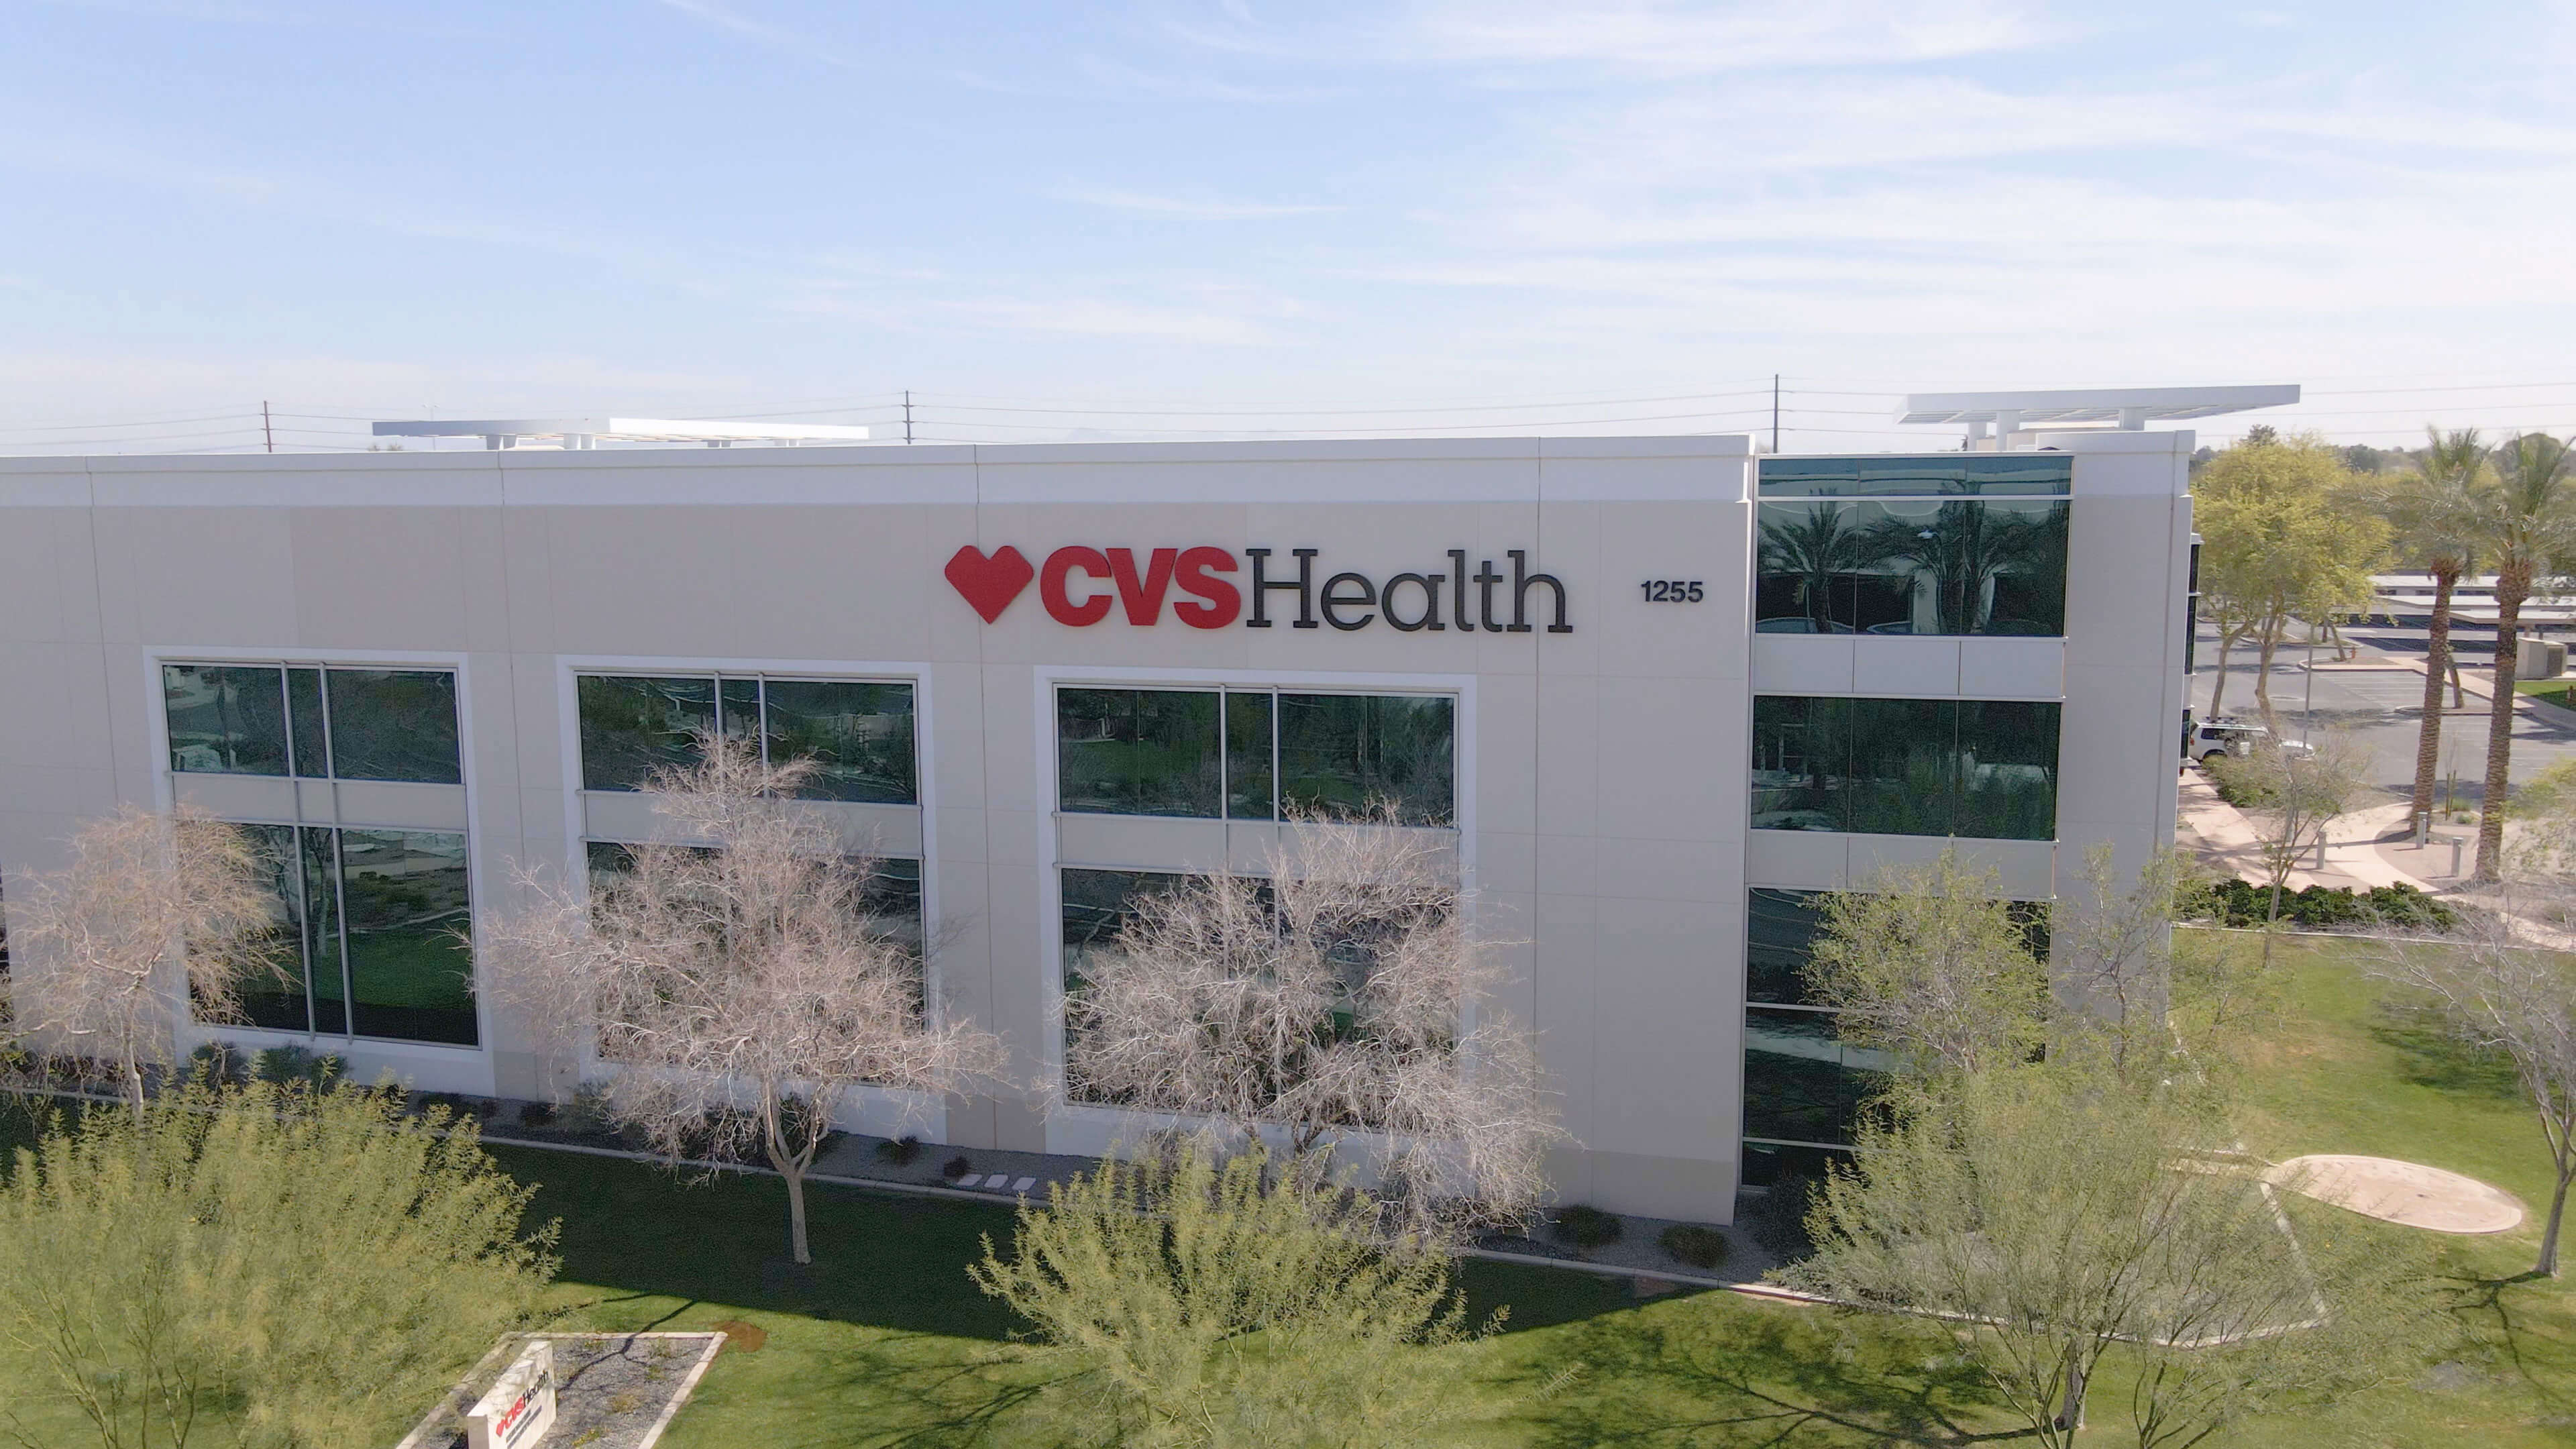 An external view of a CVS Health corporate building.